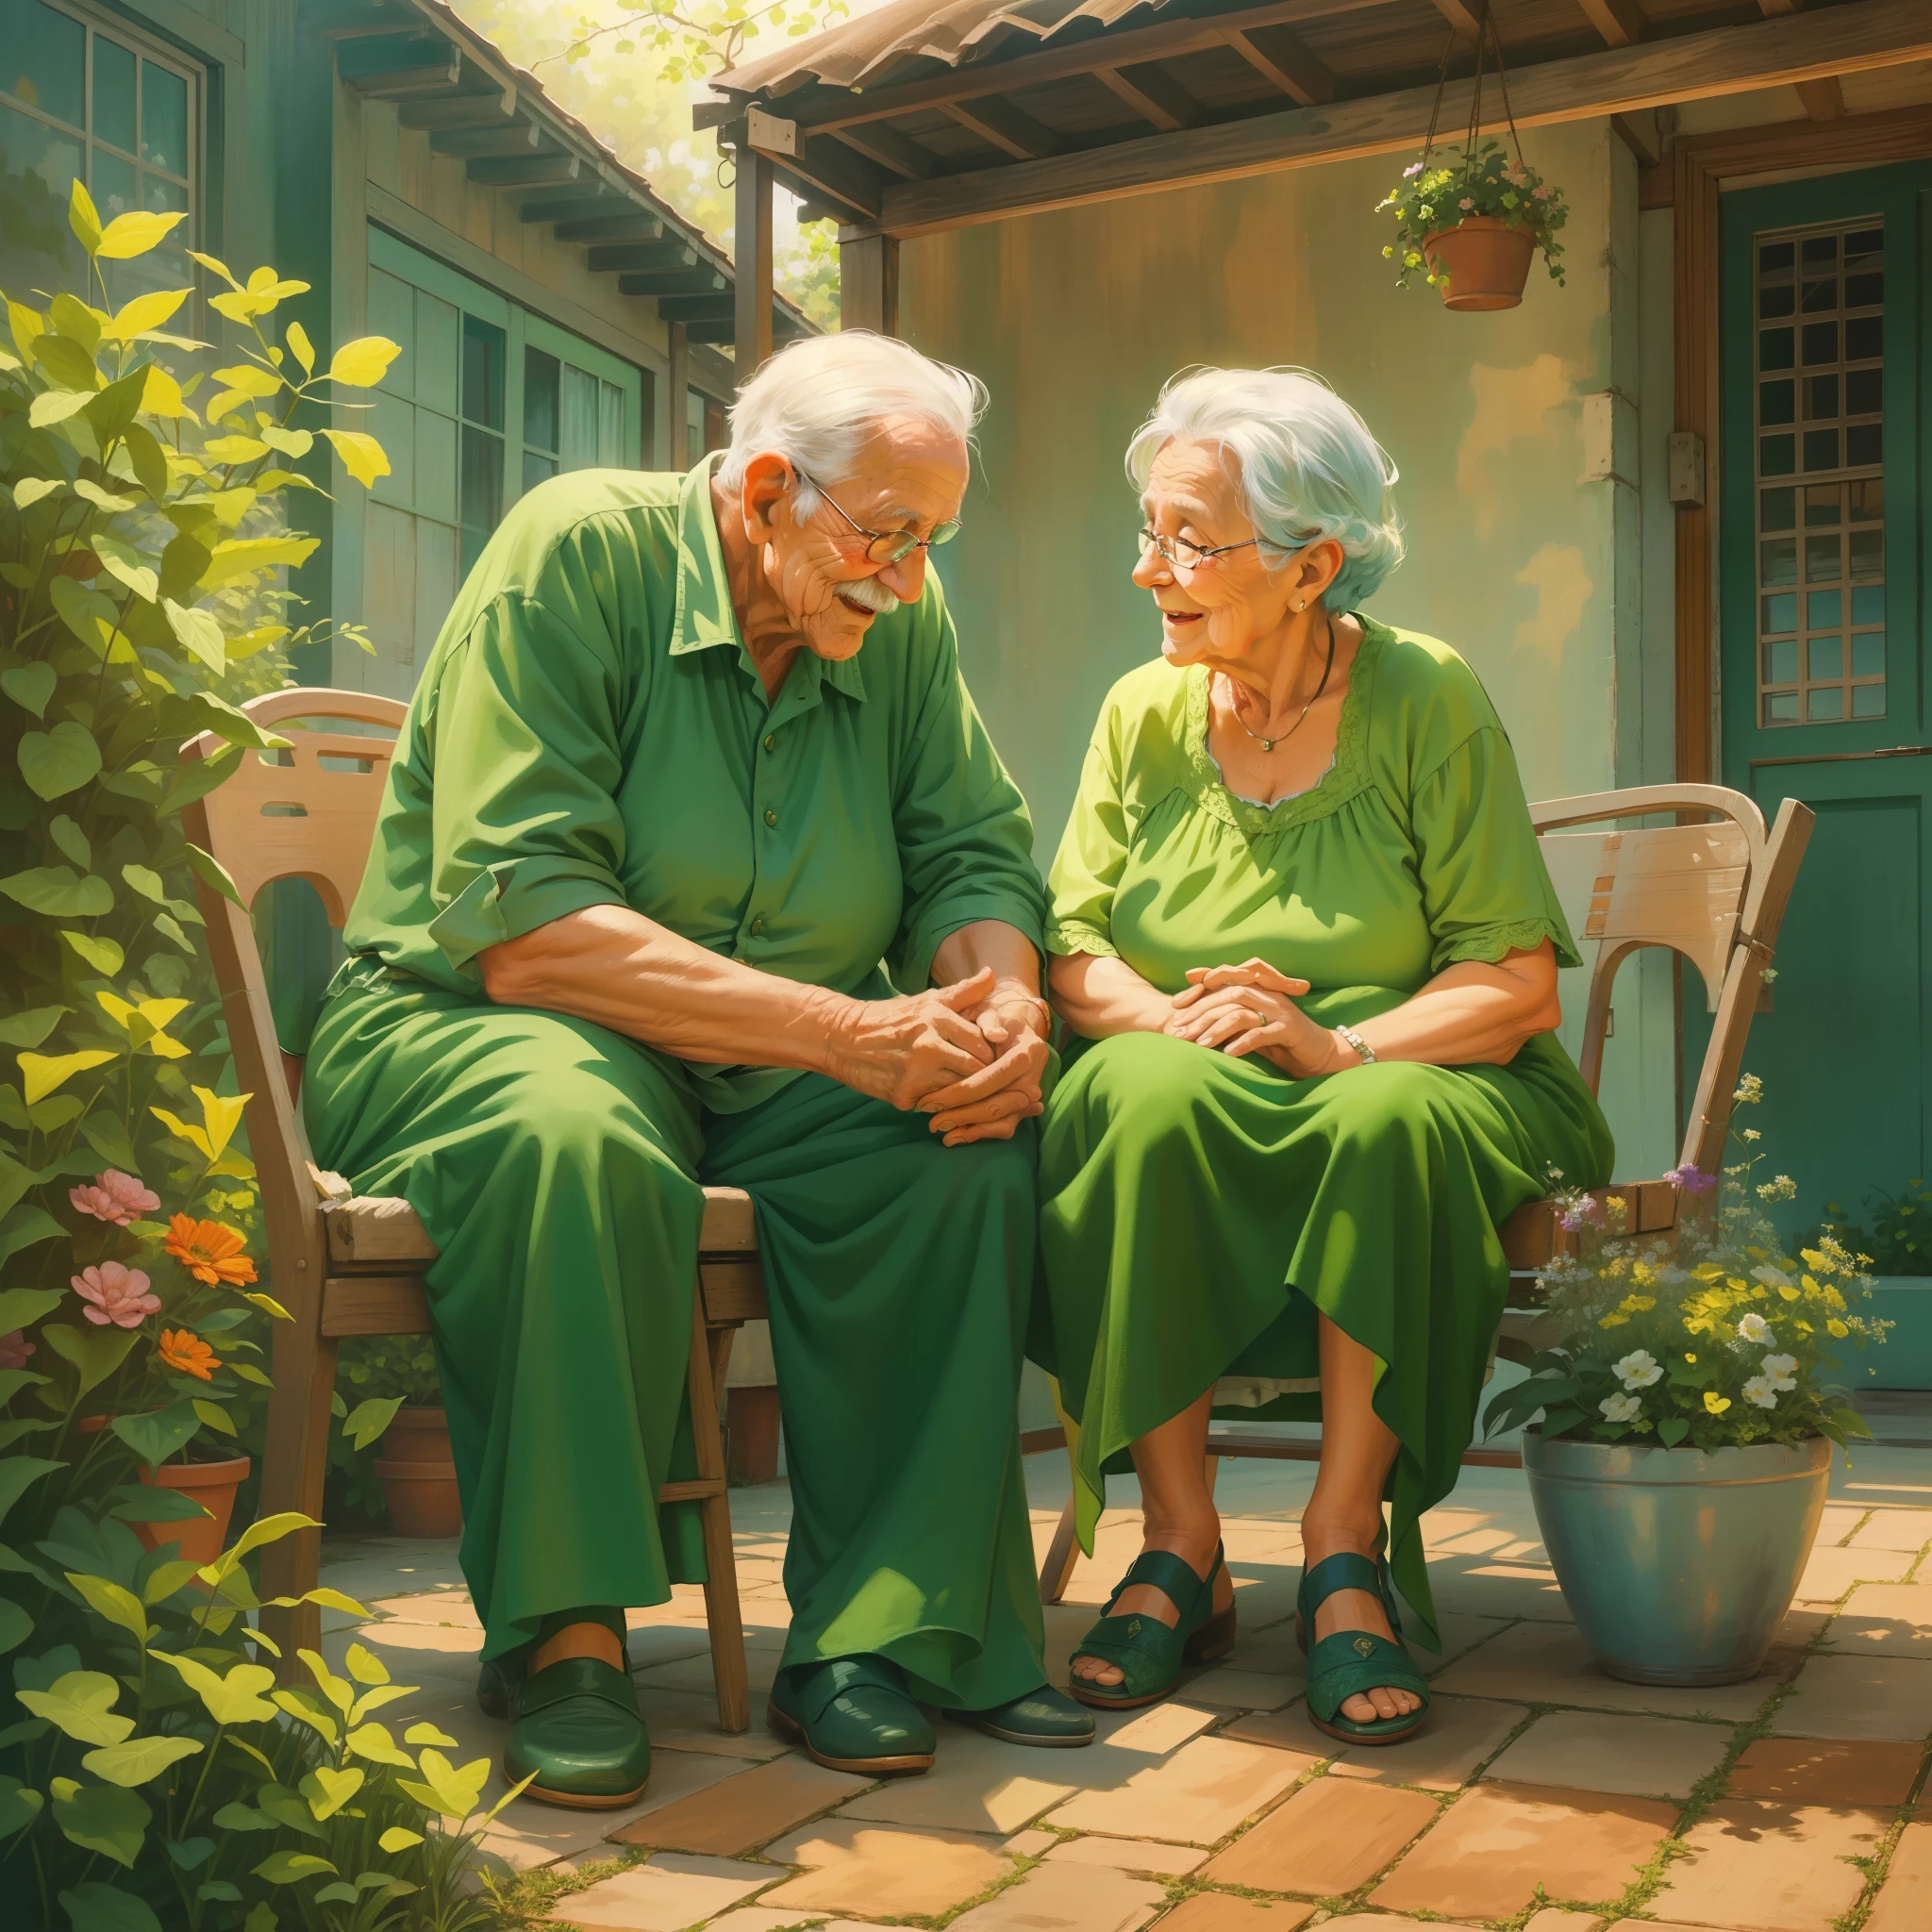 (vieux grand-père et vieille grand-mère amoureux l&#39;un de l&#39;autre, grand mère porte une robe verte, assis ensemble sur leur terrasse),illustration,peinture acrylique,[couleurs vives],[liens familiaux],[belle scène],[atmosphère paisible],(meilleure qualité,haute résolution,chef-d&#39;œuvre:1.2),Ultra-détaillé,[Éclairage naturel],[nostalgique],bonne humeur,tons chauds